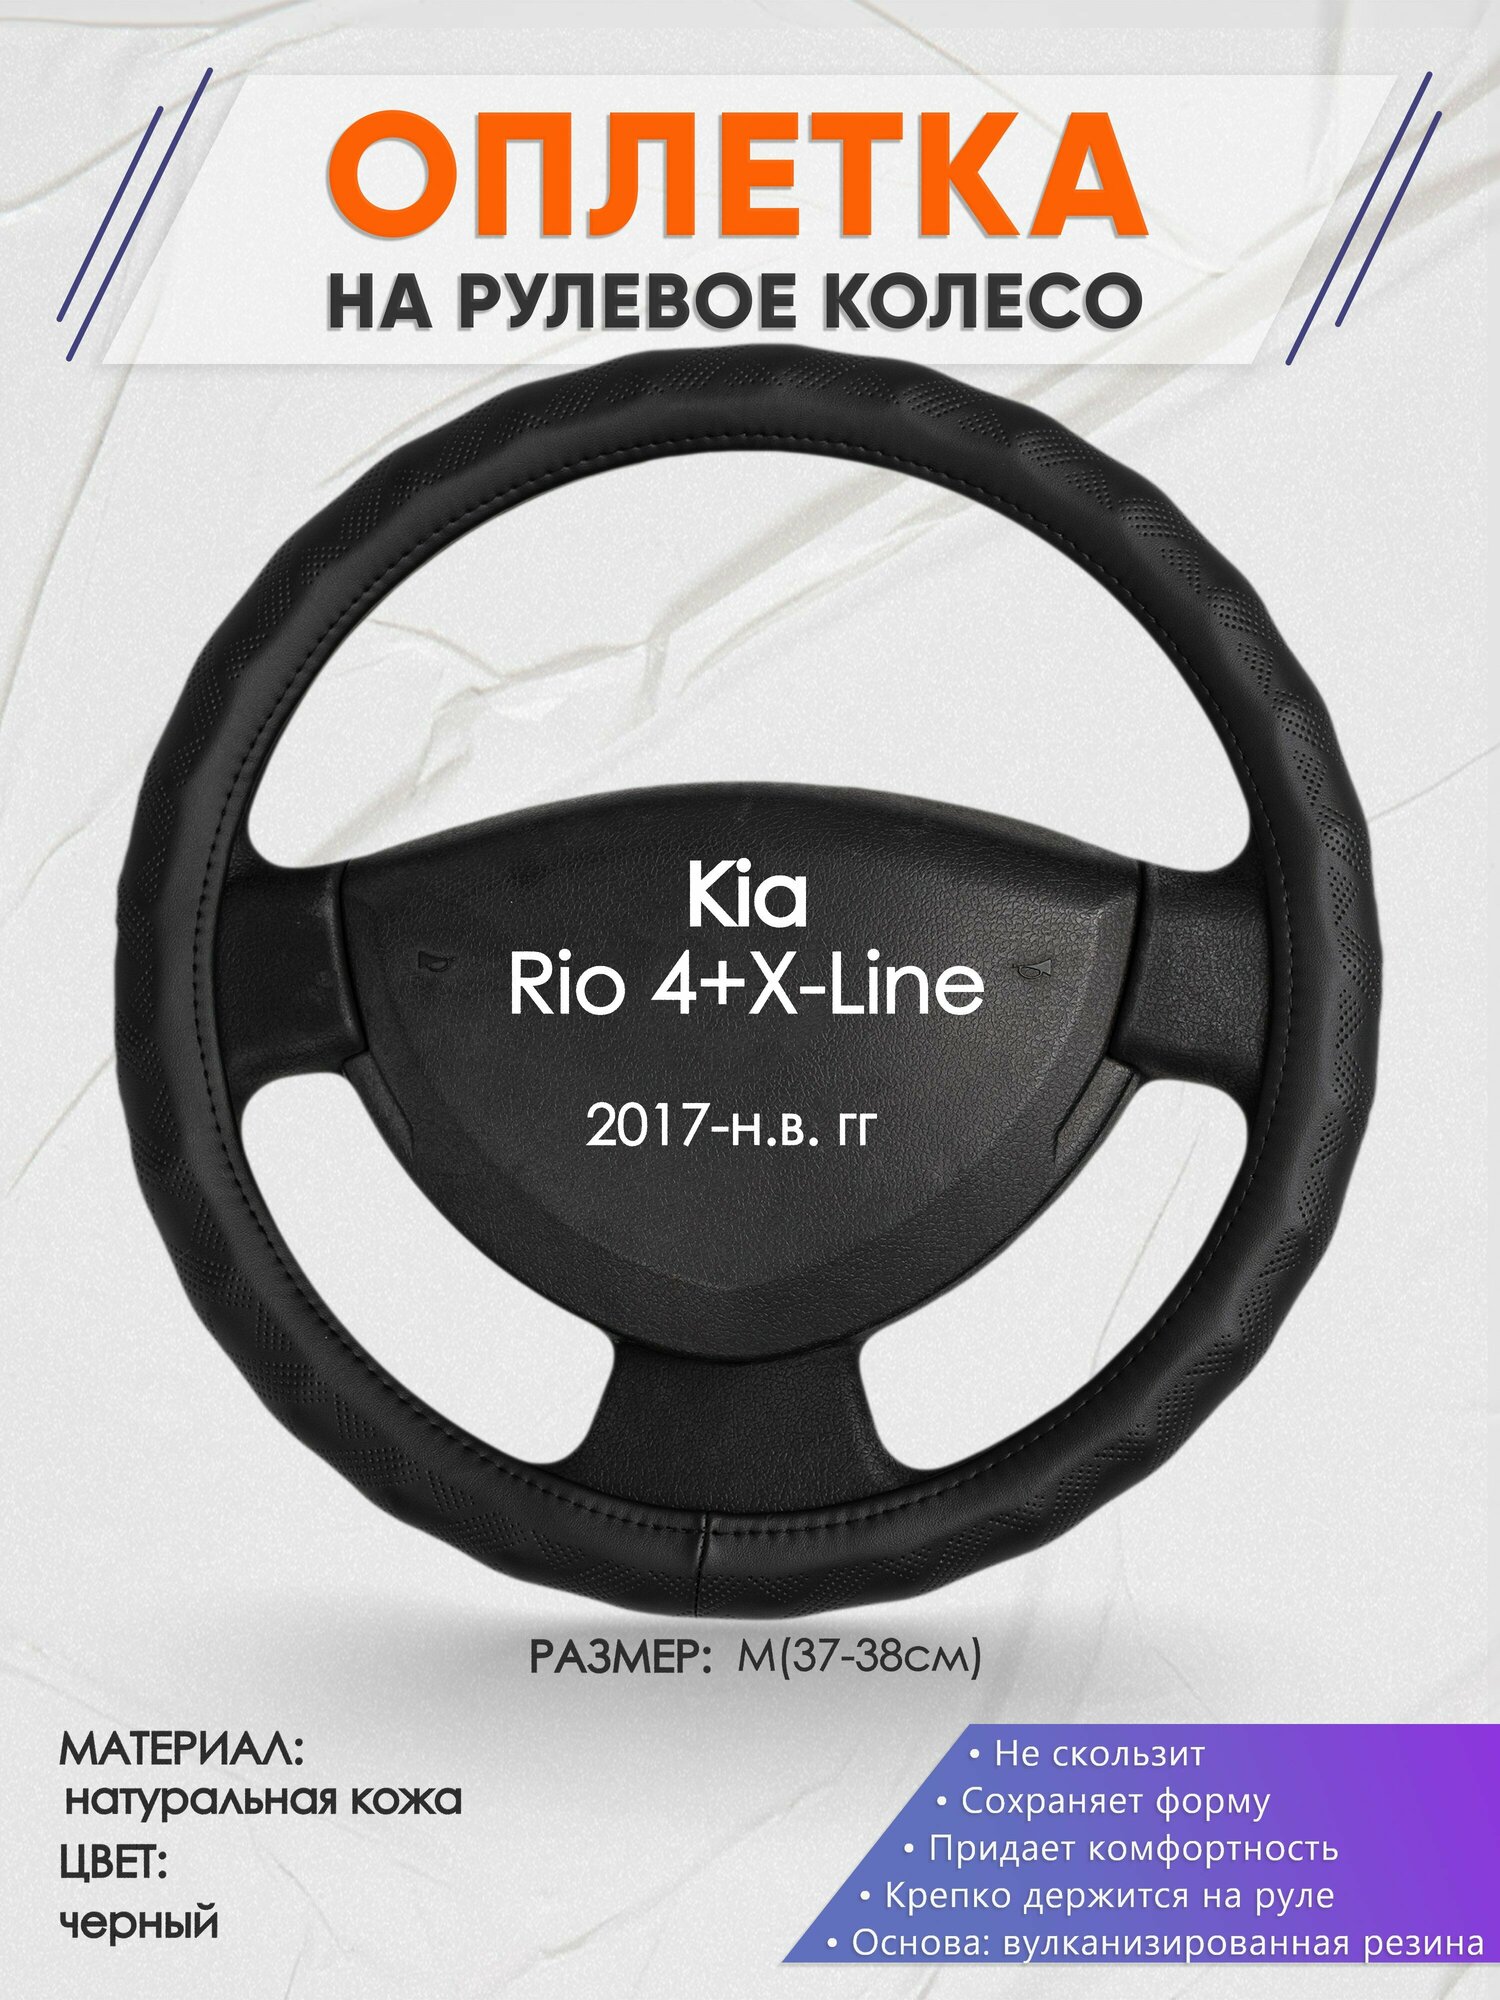 Оплетка на руль для Kia Rio 4+X-Line(Киа Рио 4 / Икс Лайн) 2017-н. в, M(37-38см), Натуральная кожа 26